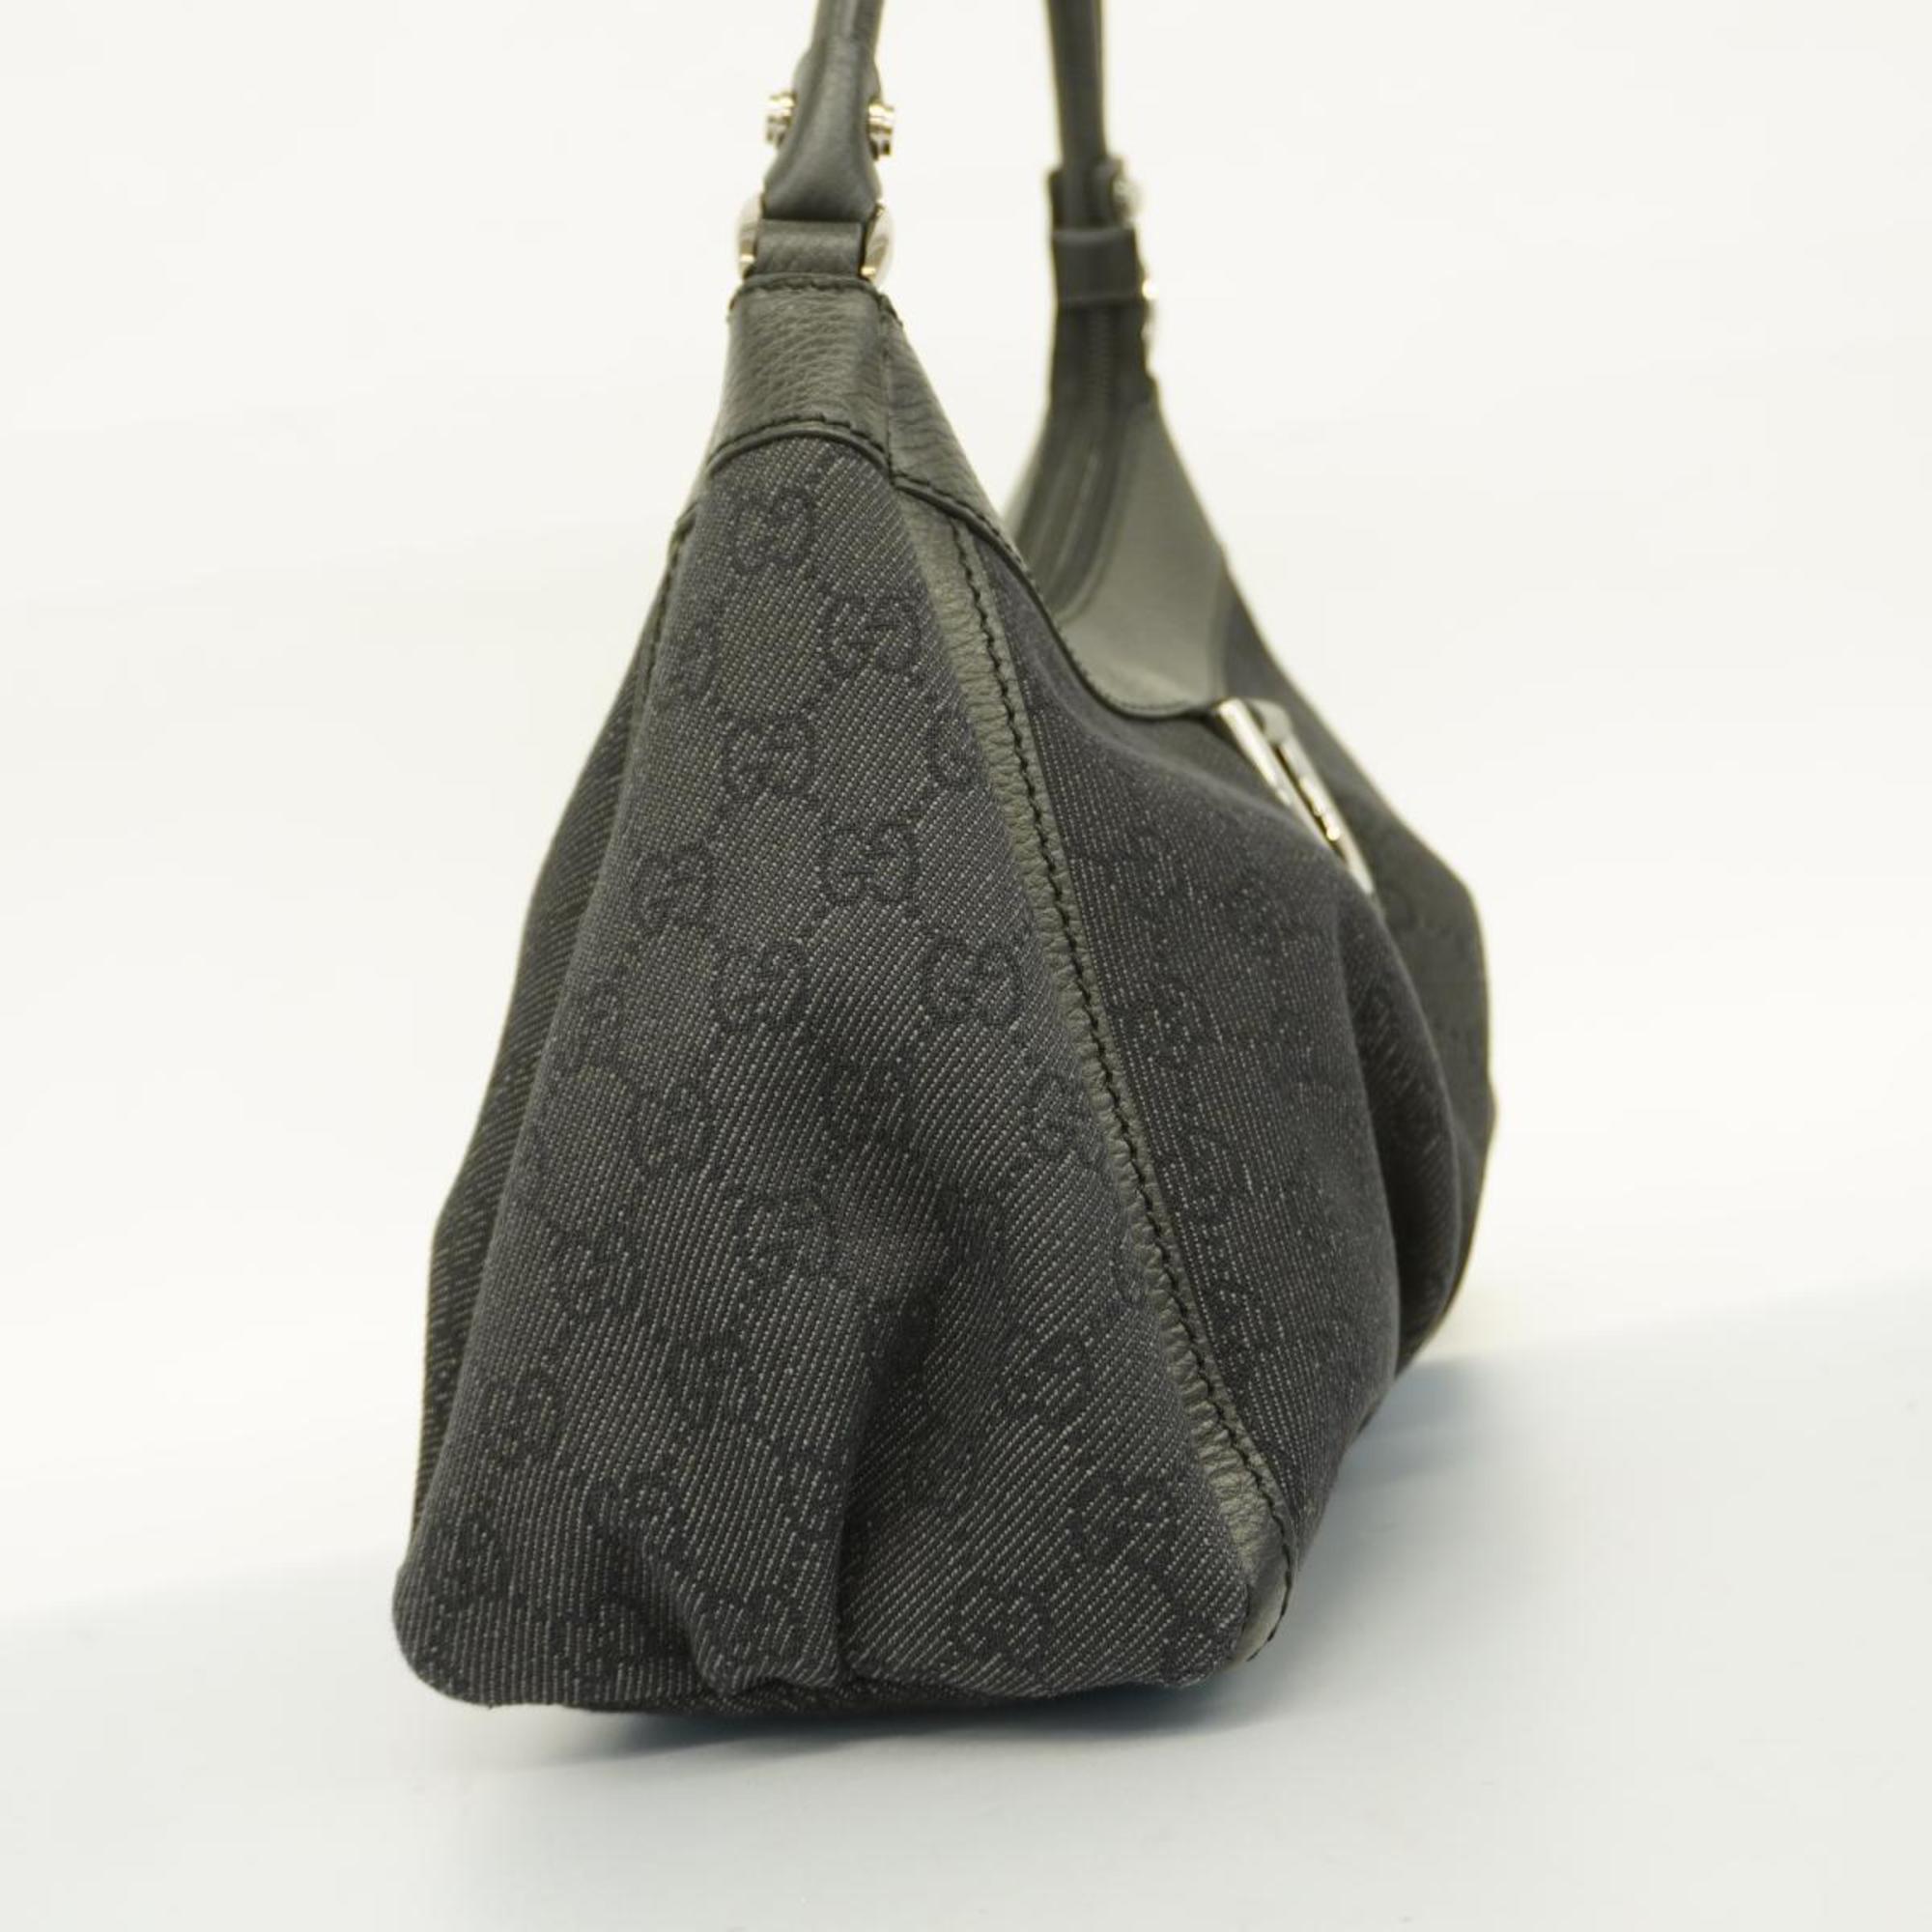 Gucci handbag Abby 265692 denim black ladies